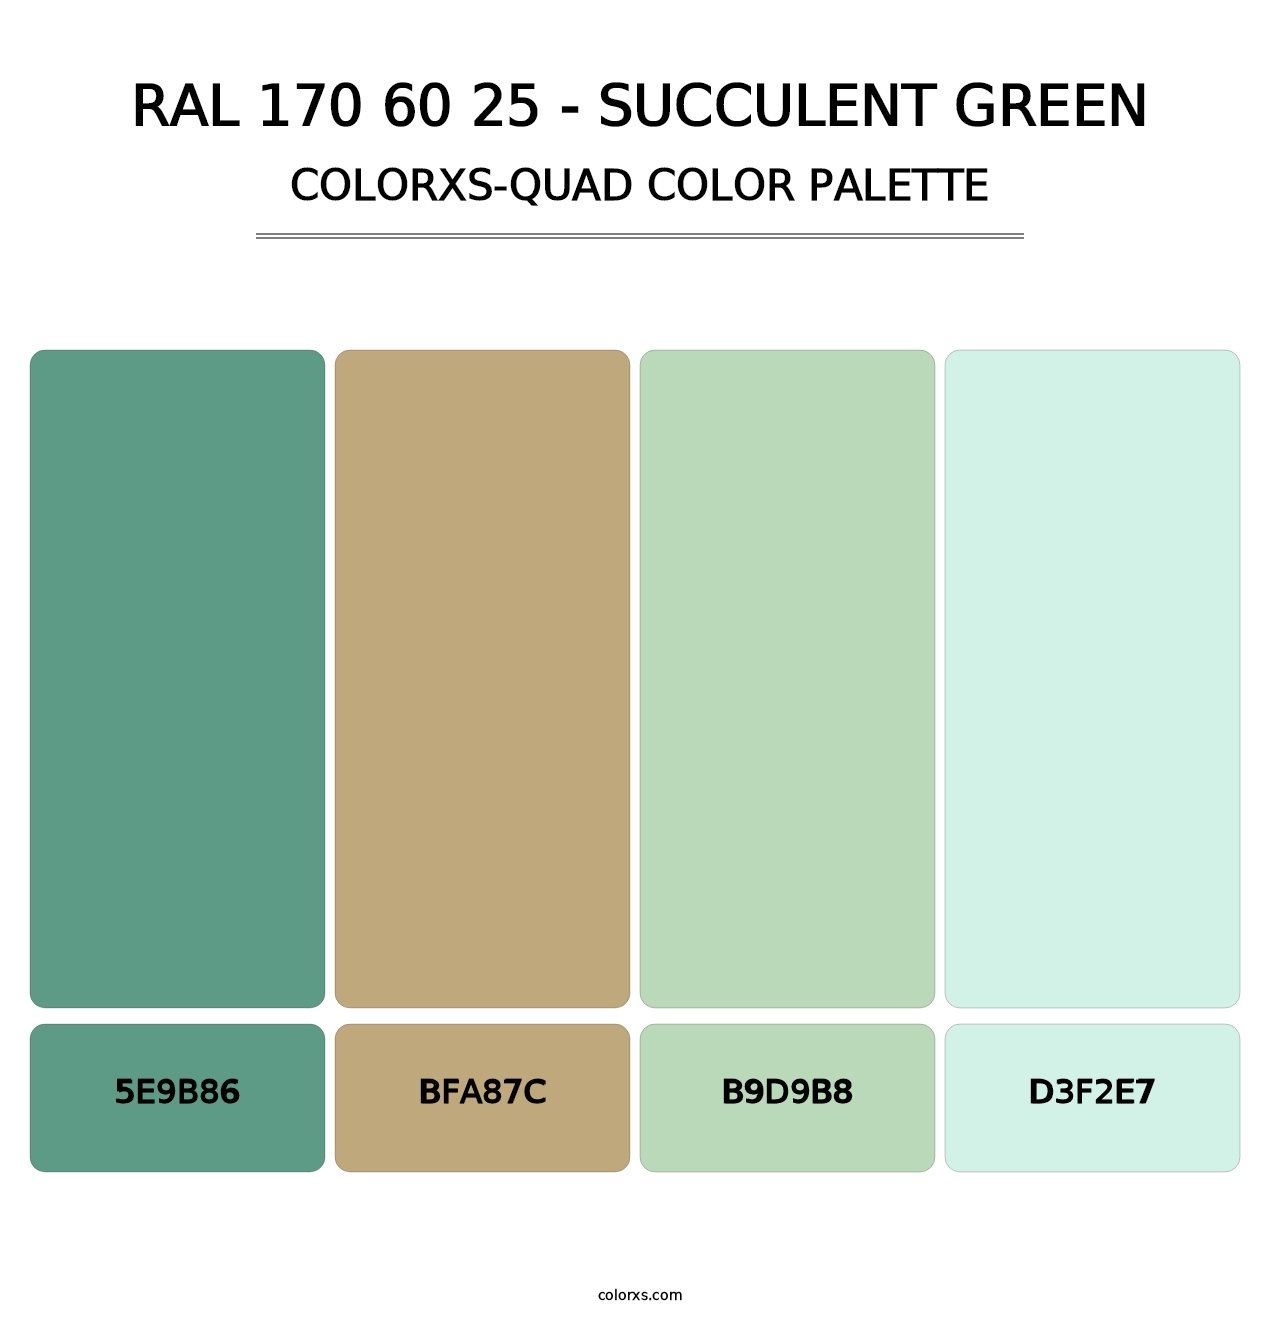 RAL 170 60 25 - Succulent Green - Colorxs Quad Palette